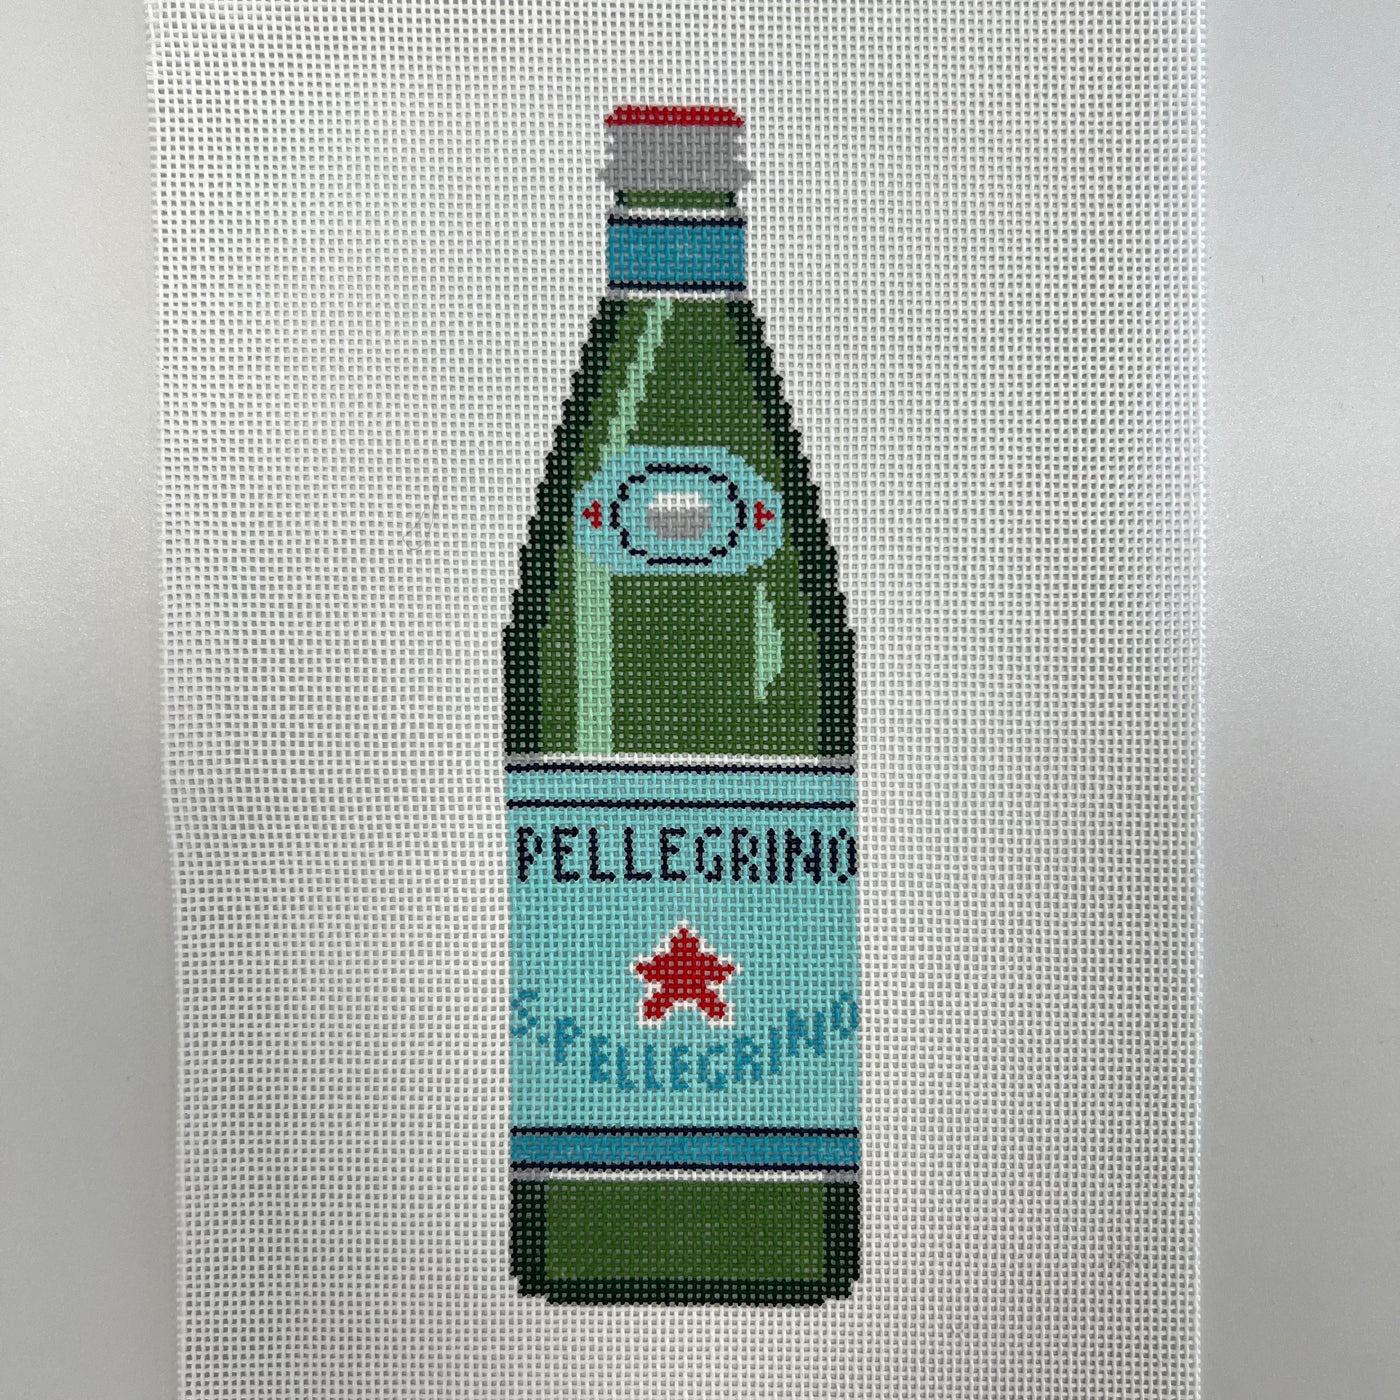 San Pellegrino Bottle Needlepoint Canvas